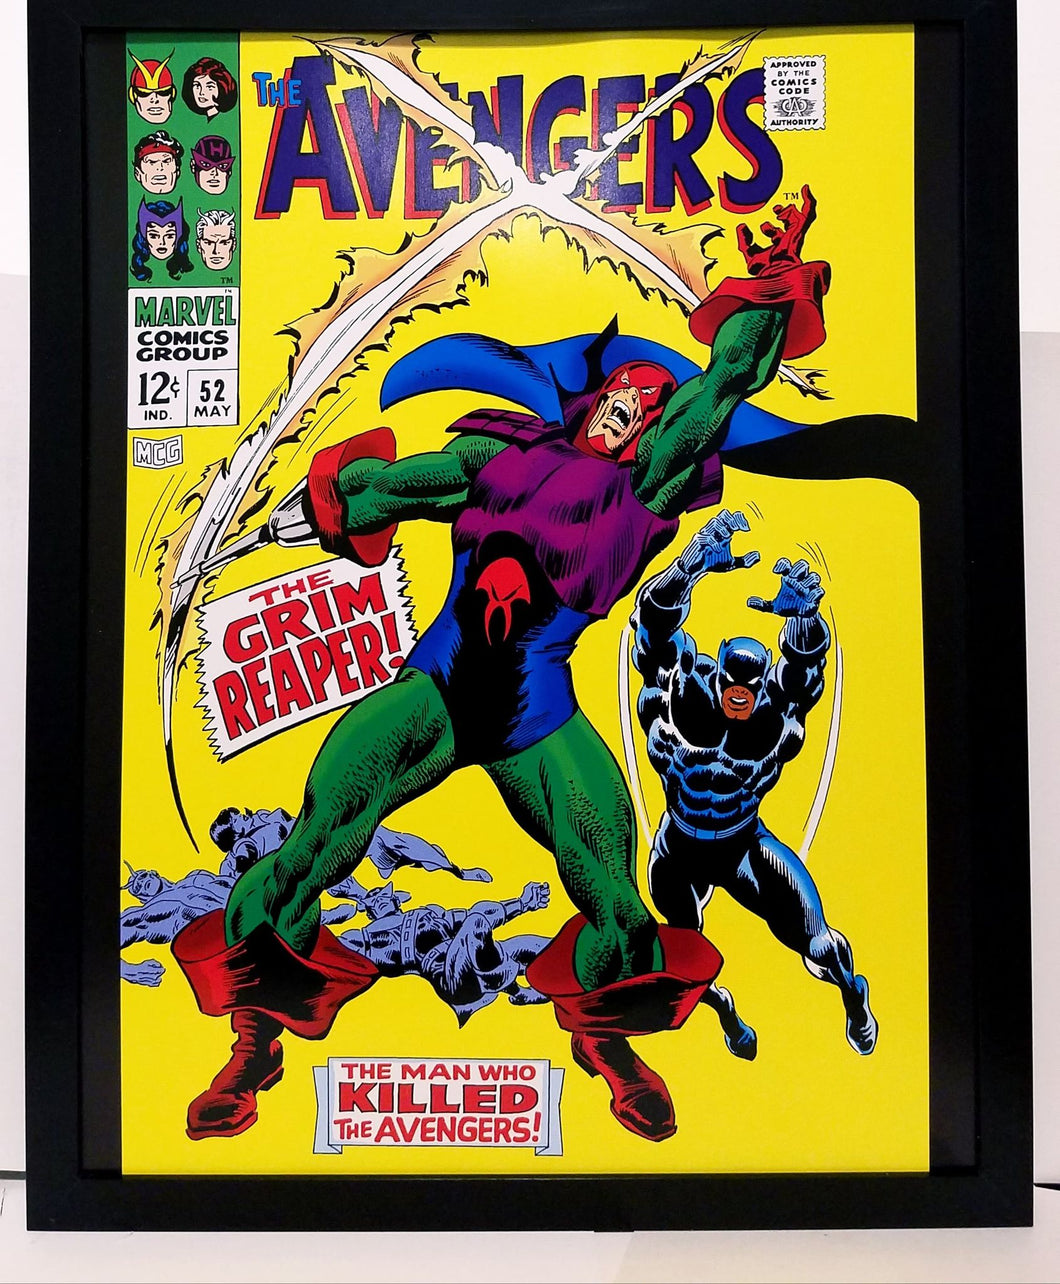 Avengers #52 by John Buscema pg. 1 11x14 FRAMED Marvel Comics Art Print Poster